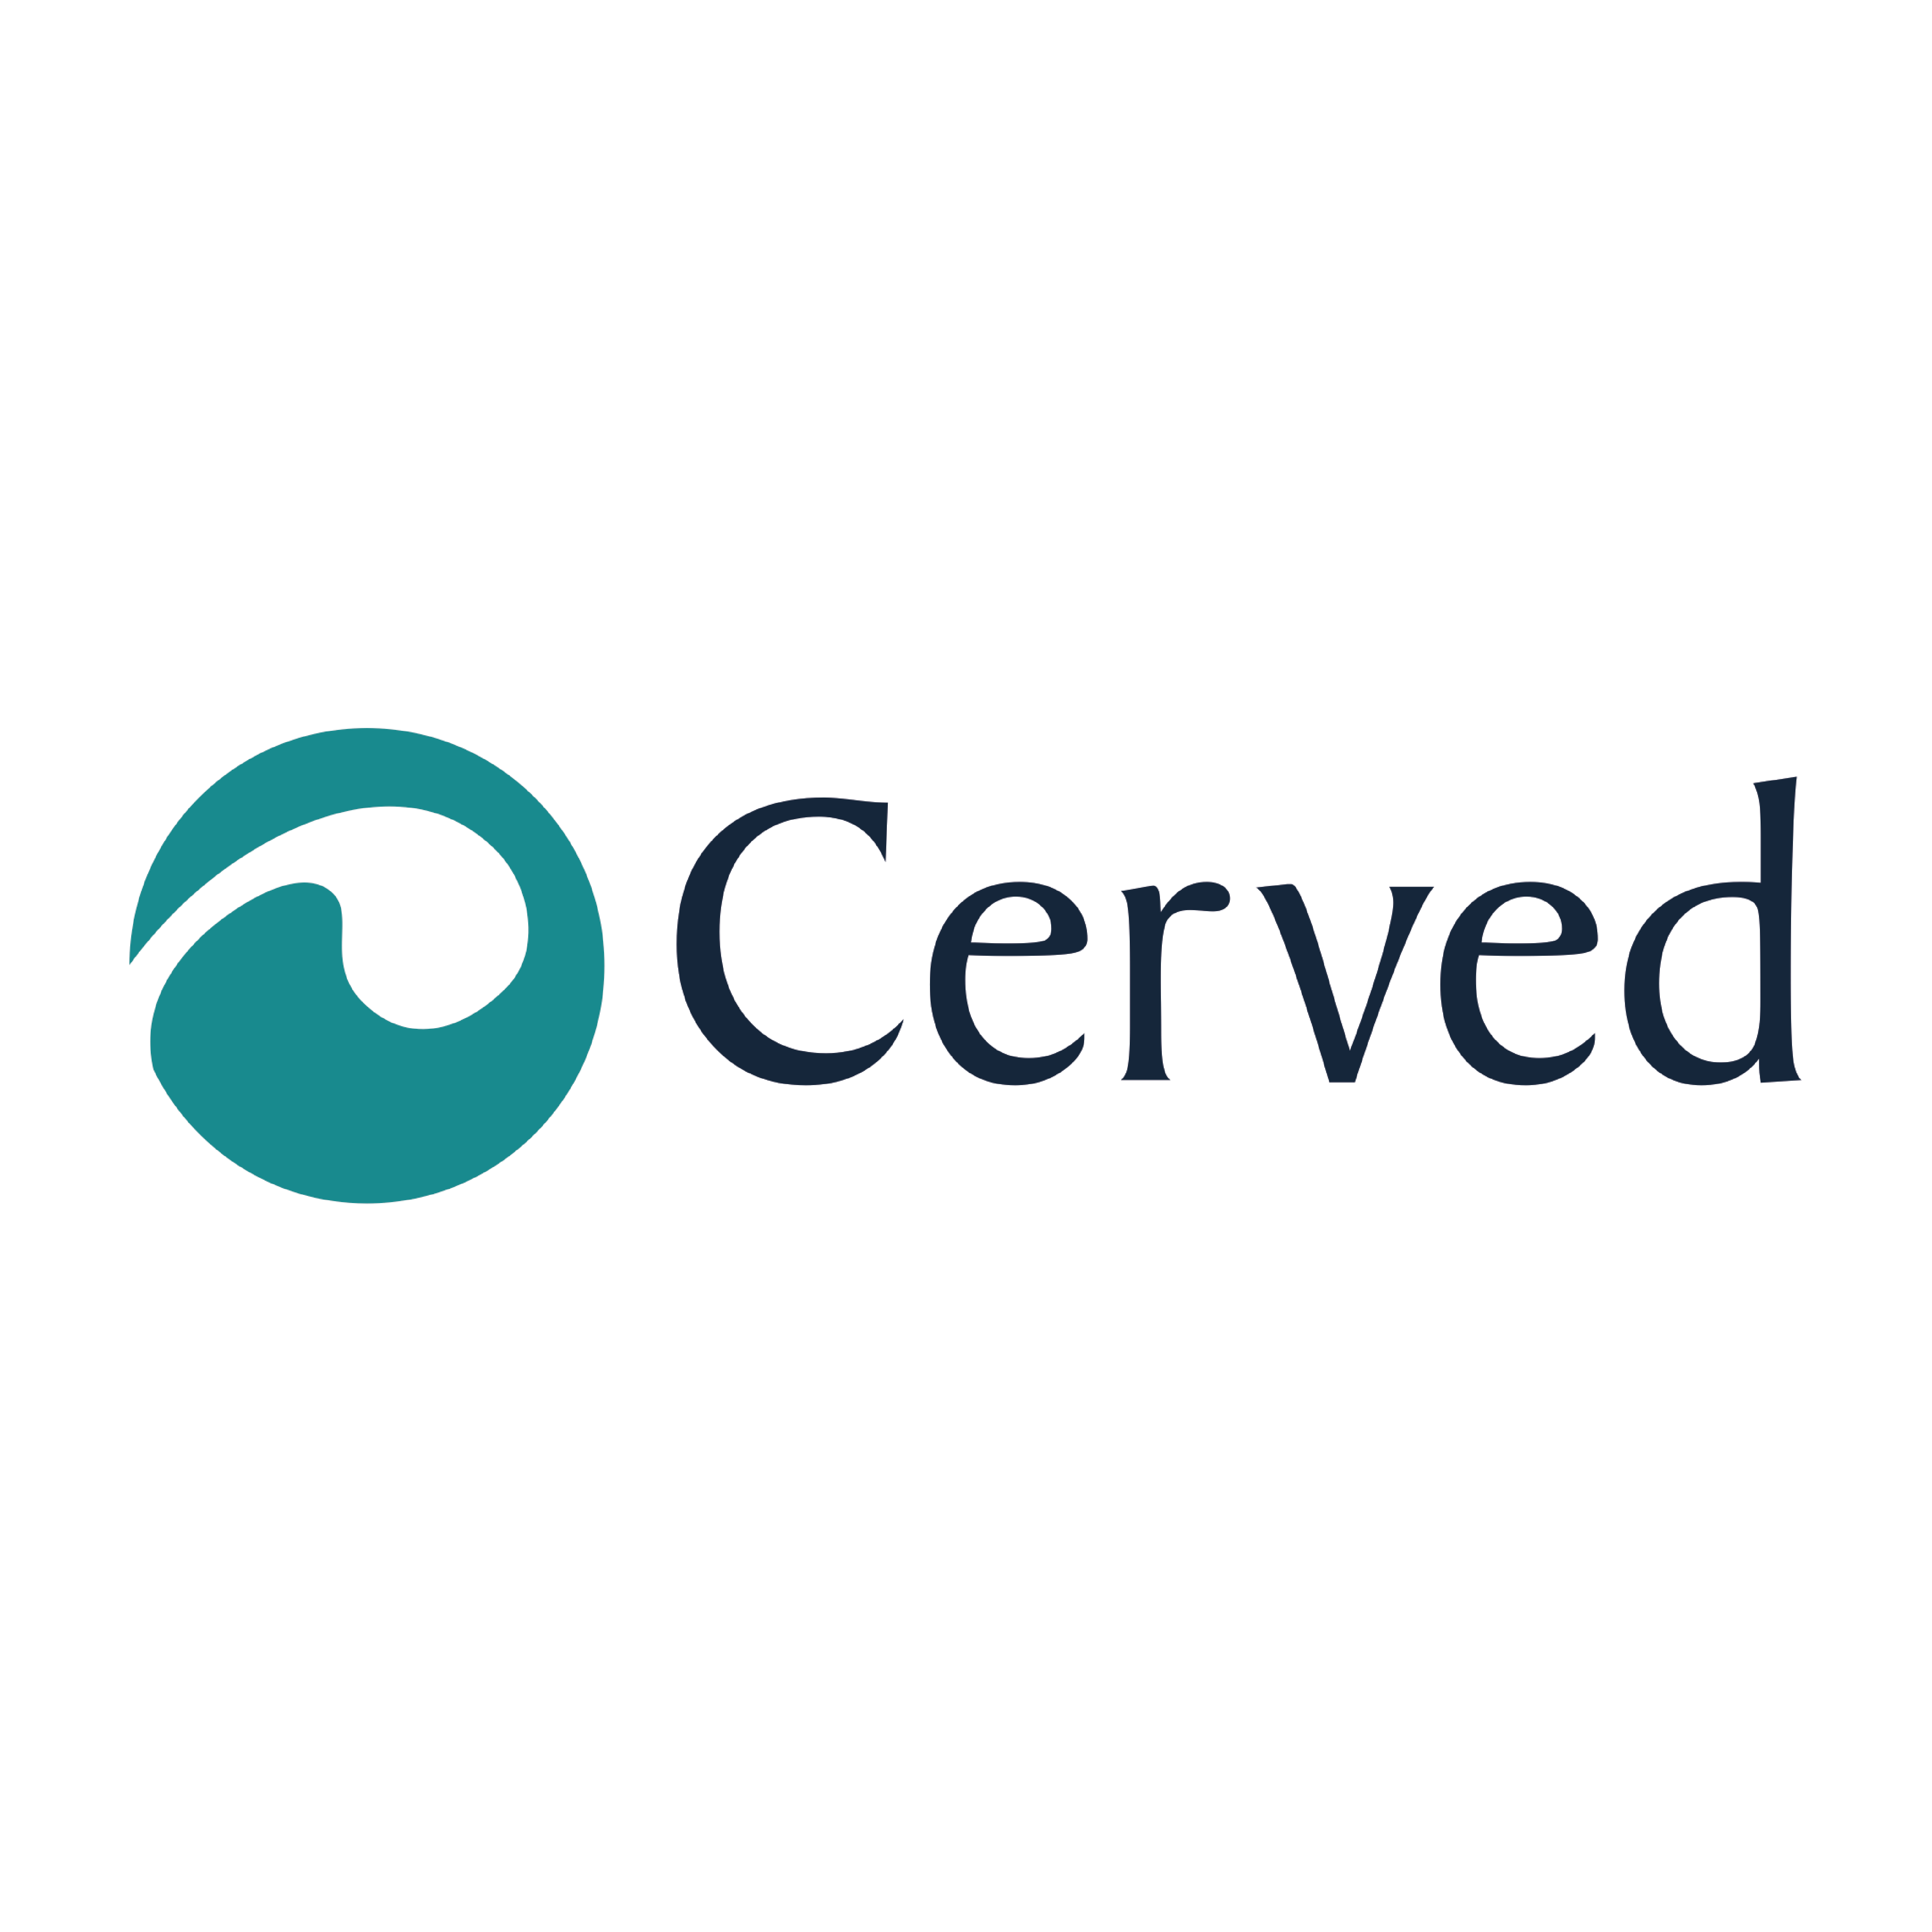 Cerved réduit ses coûts d'infrastructure grâce à l'adoption d'un environnement serverless sur AWS